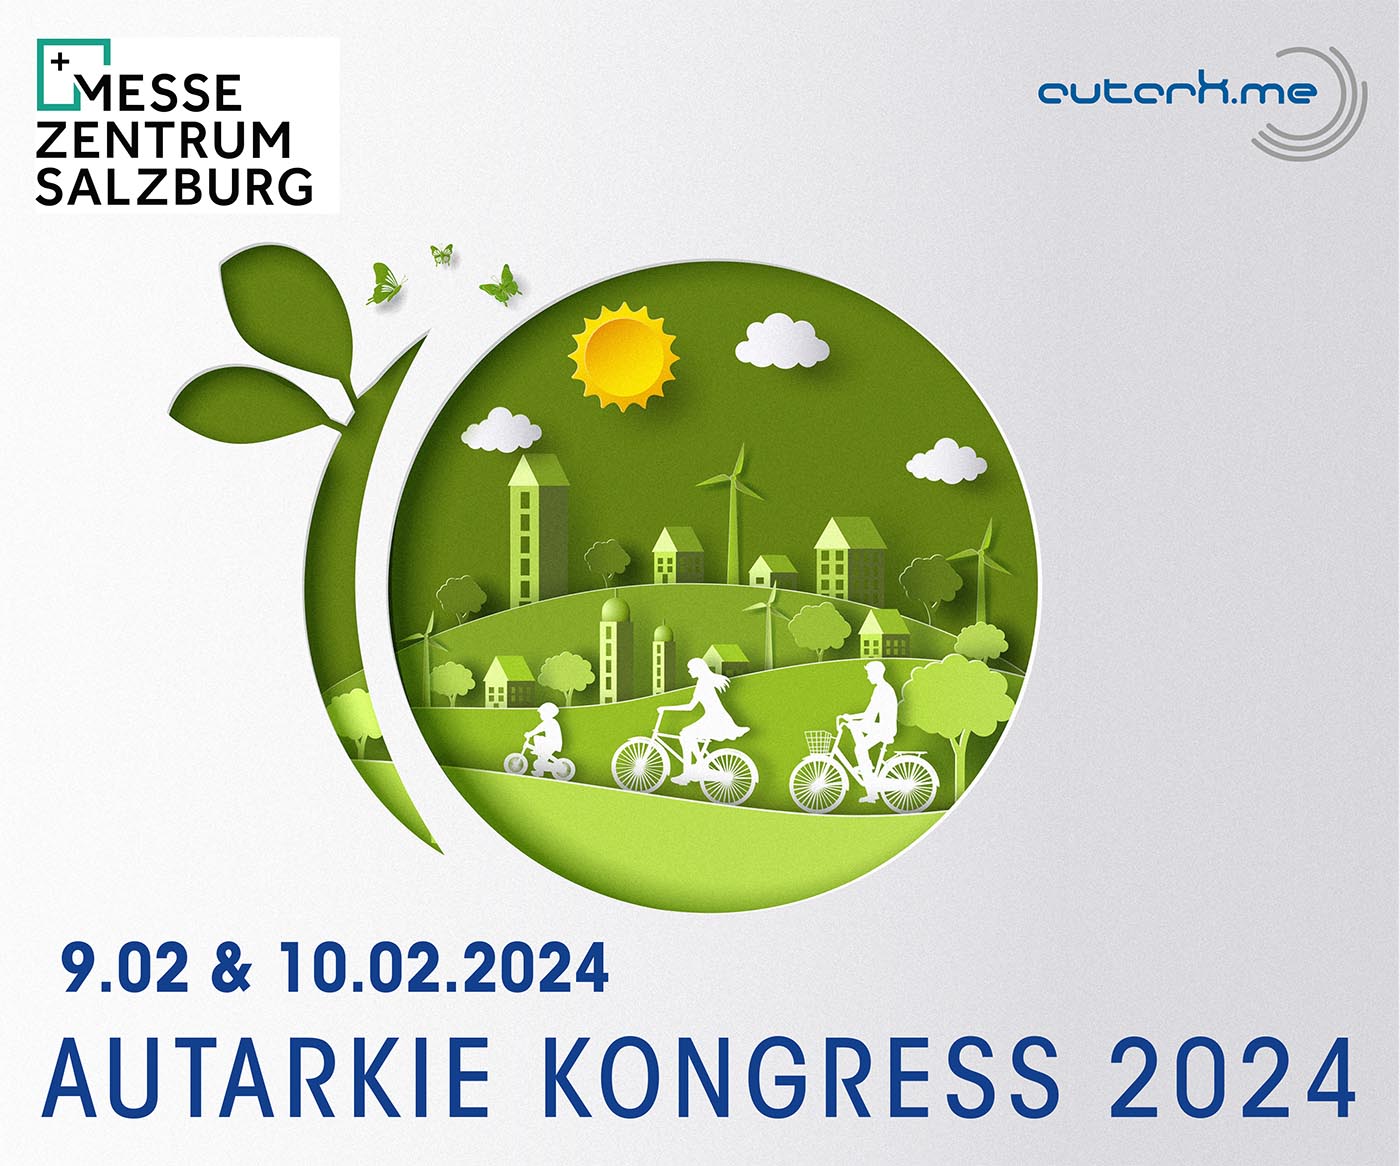 „Autarkie Kongress“ 2024 in Salzburg